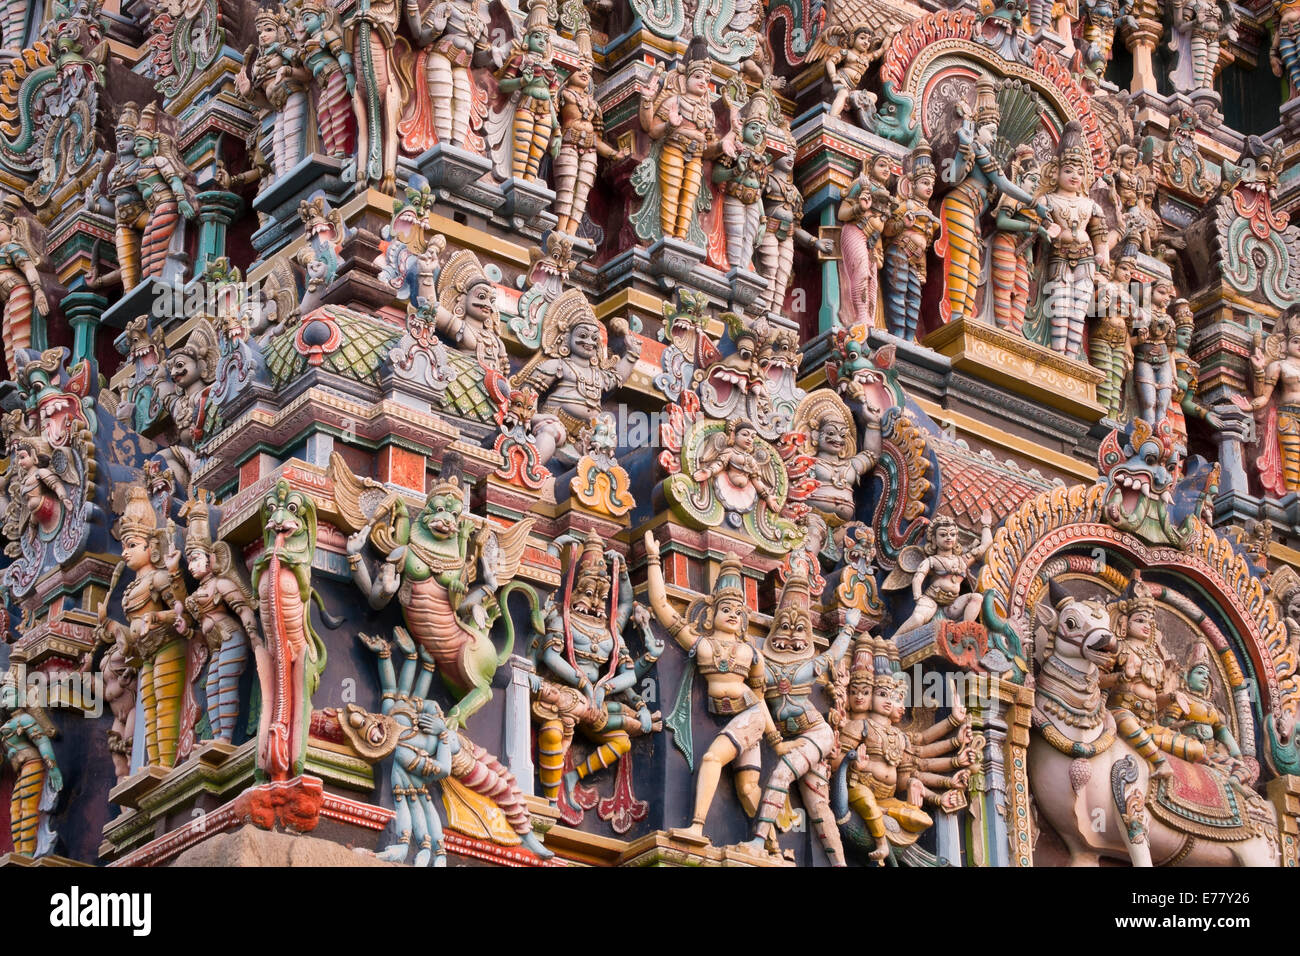 Ornate statues sur la tour sud, Meenakshi Amman Temple, Madurai, Tamil Nadu, Inde Banque D'Images